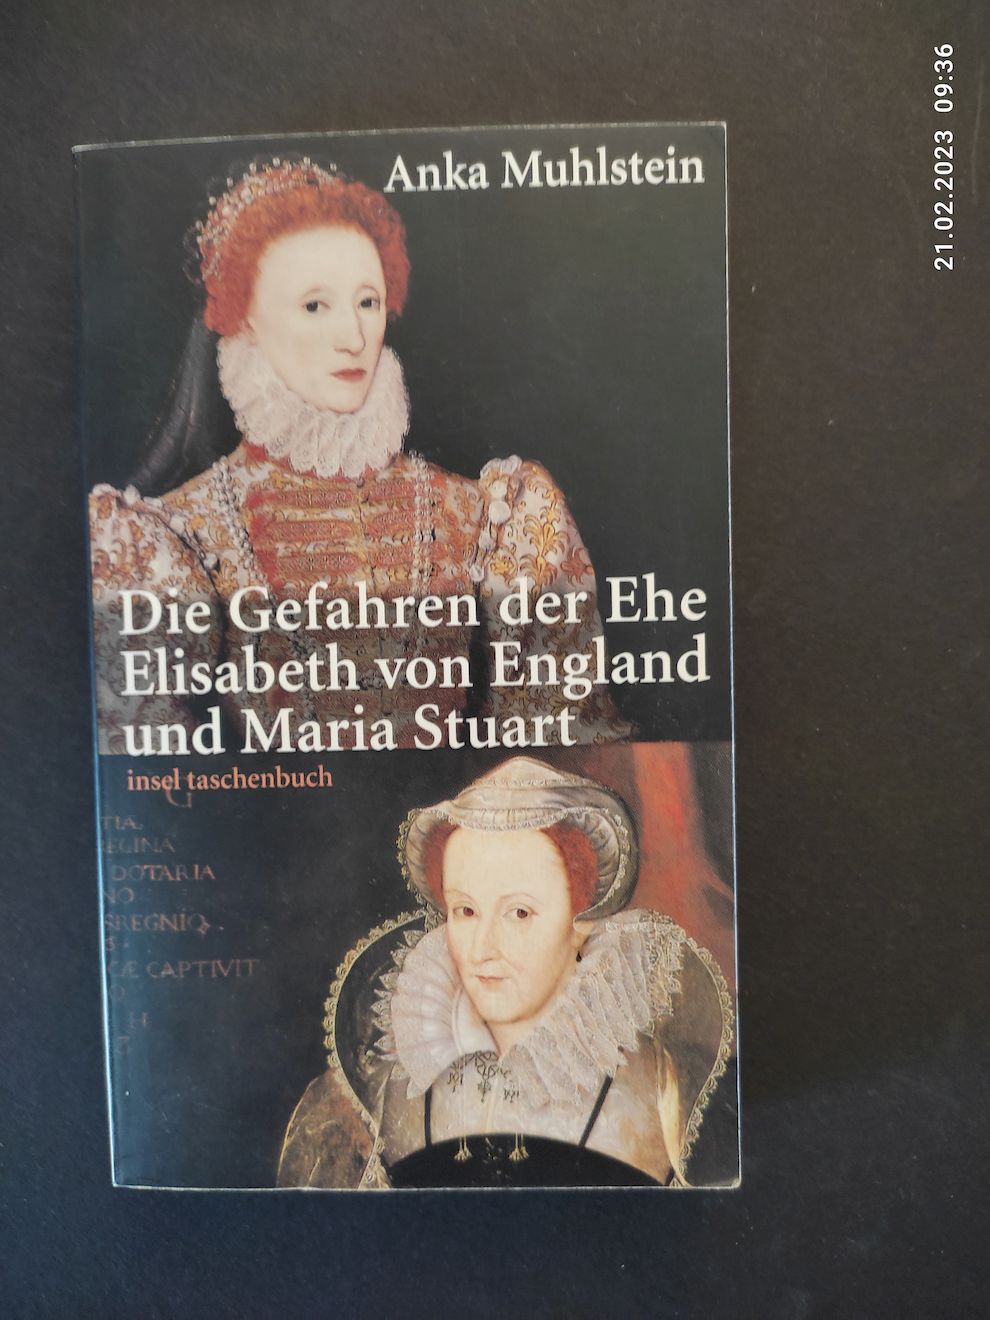 Die Gefahren der Ehe : Elisabeth von England und Maria Stuart. Aus dem Franz. von Ulrich Kunzmann / Insel-Taschenbuch ; 3421 - Muhlstein, Anka